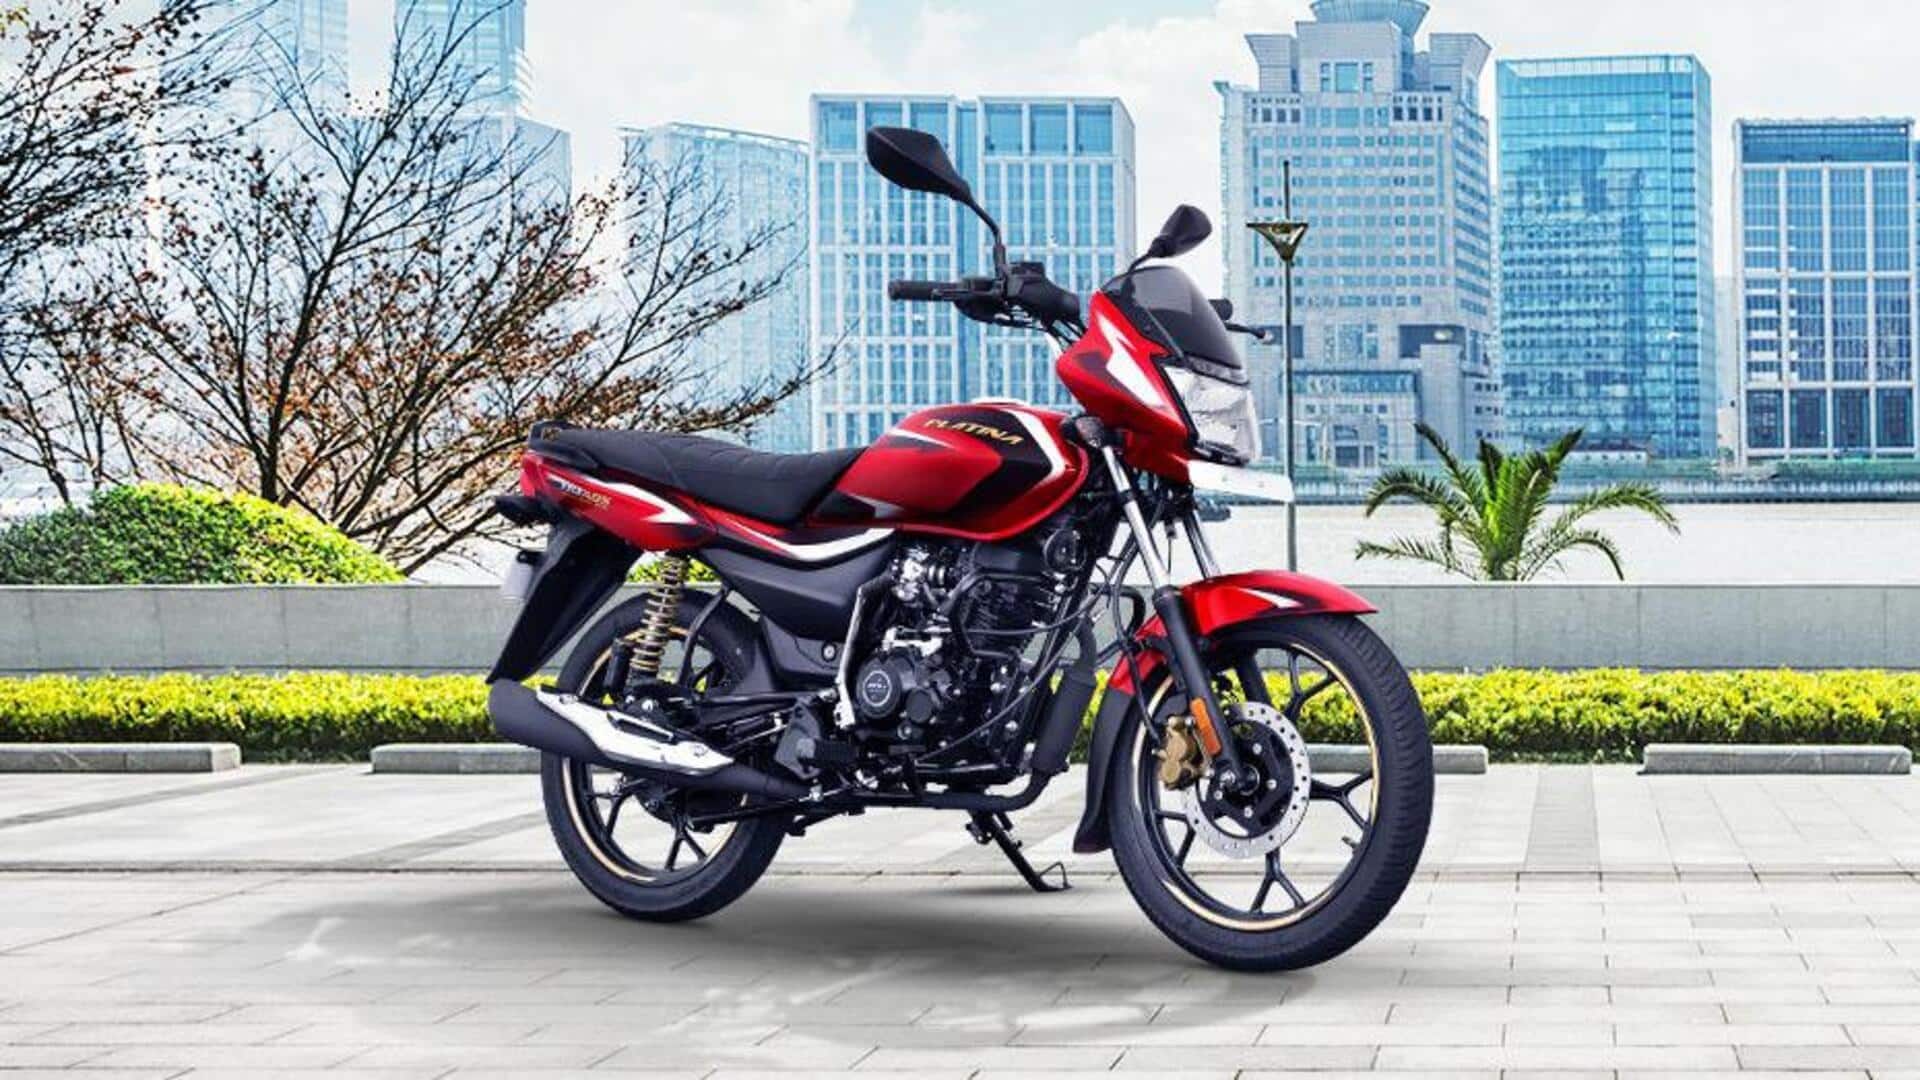 Bajaj postpones launch of CNG motorcycle to July 17